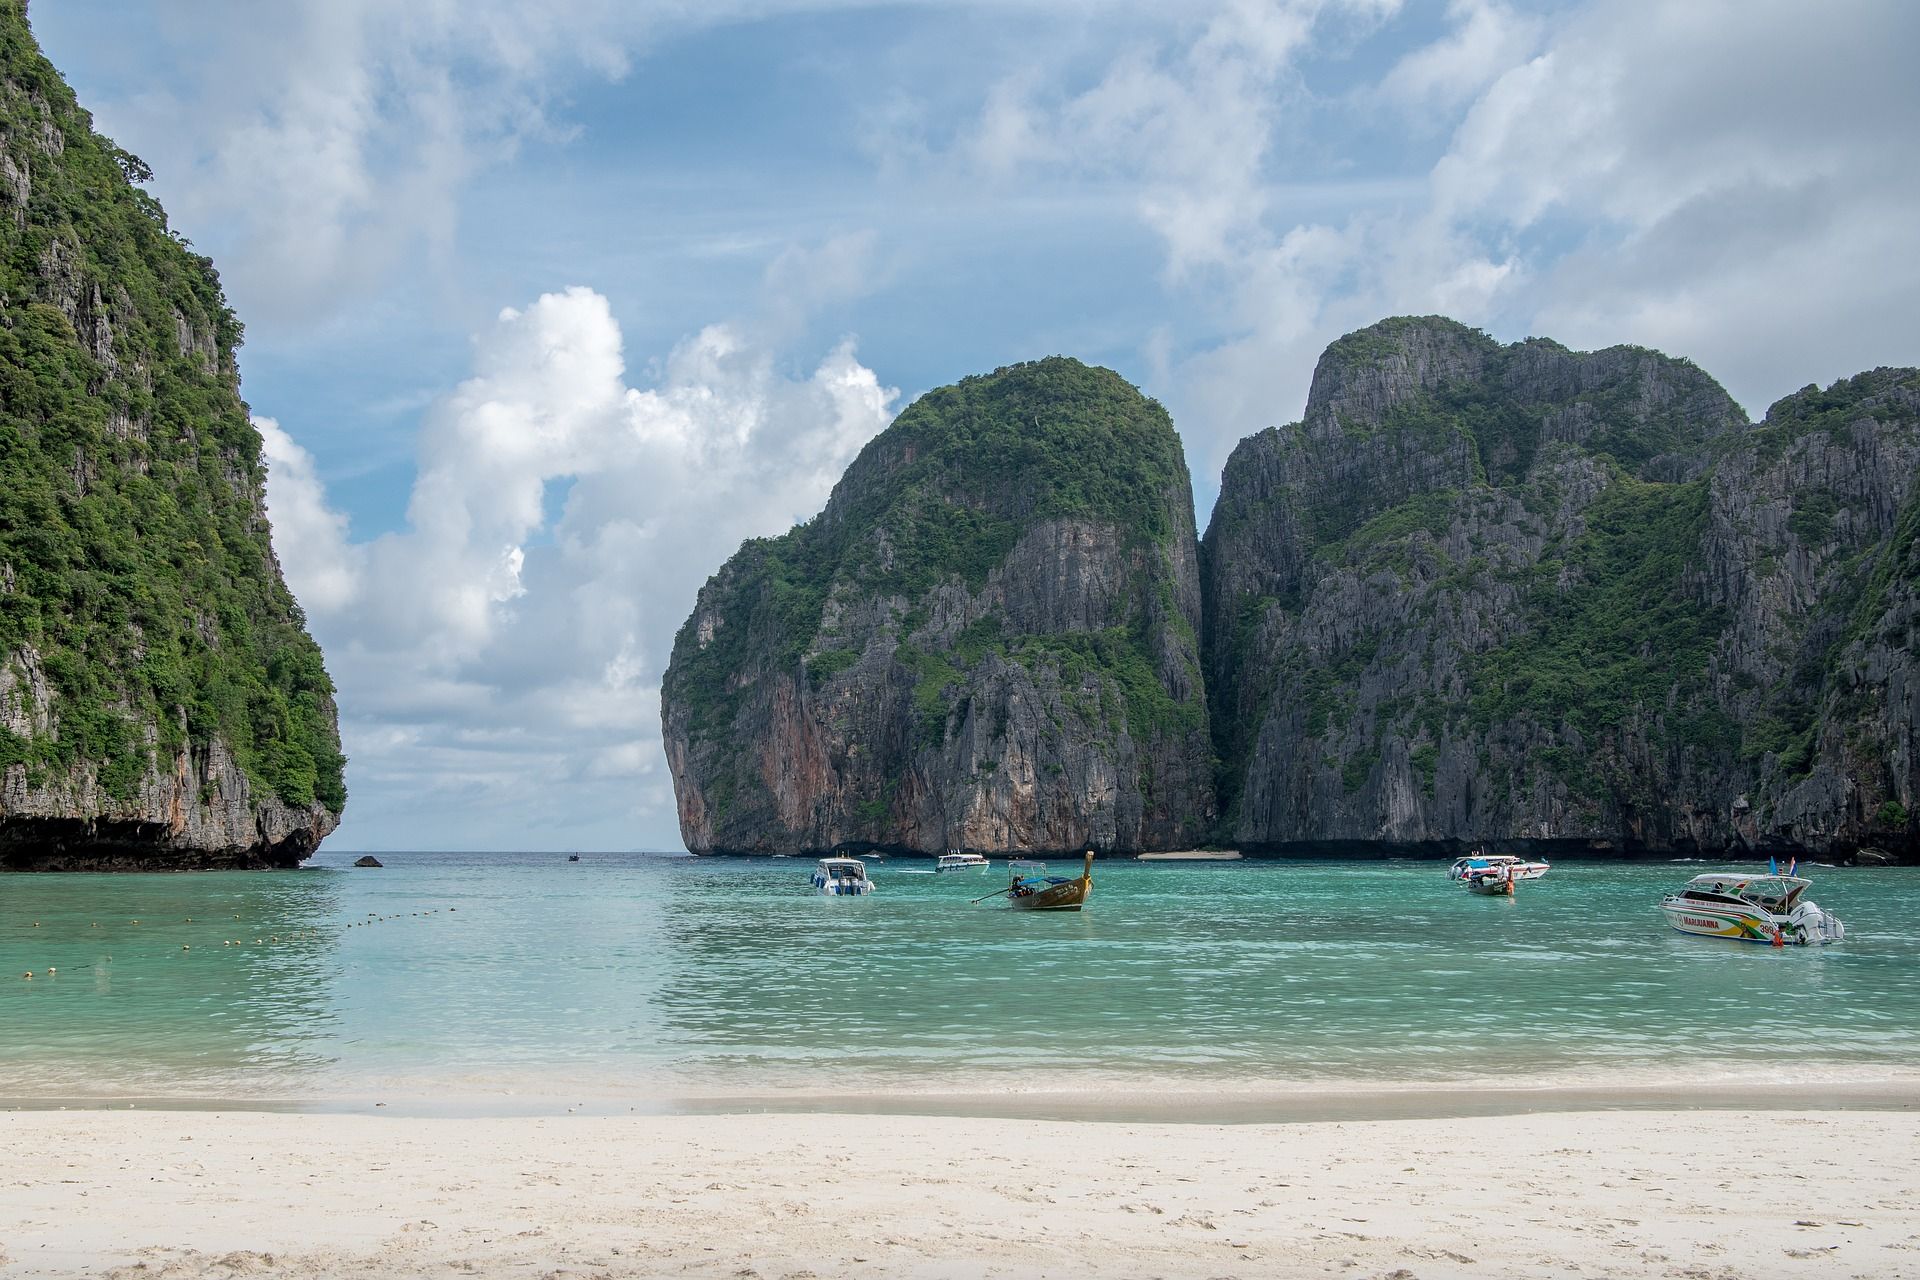 Rauchen in Thailand: Der beliebte Maya Beach in Koh Phi Phi wurde zeitweise wegen Umweltverschmutzung gesperrt! Foto: Pixabay